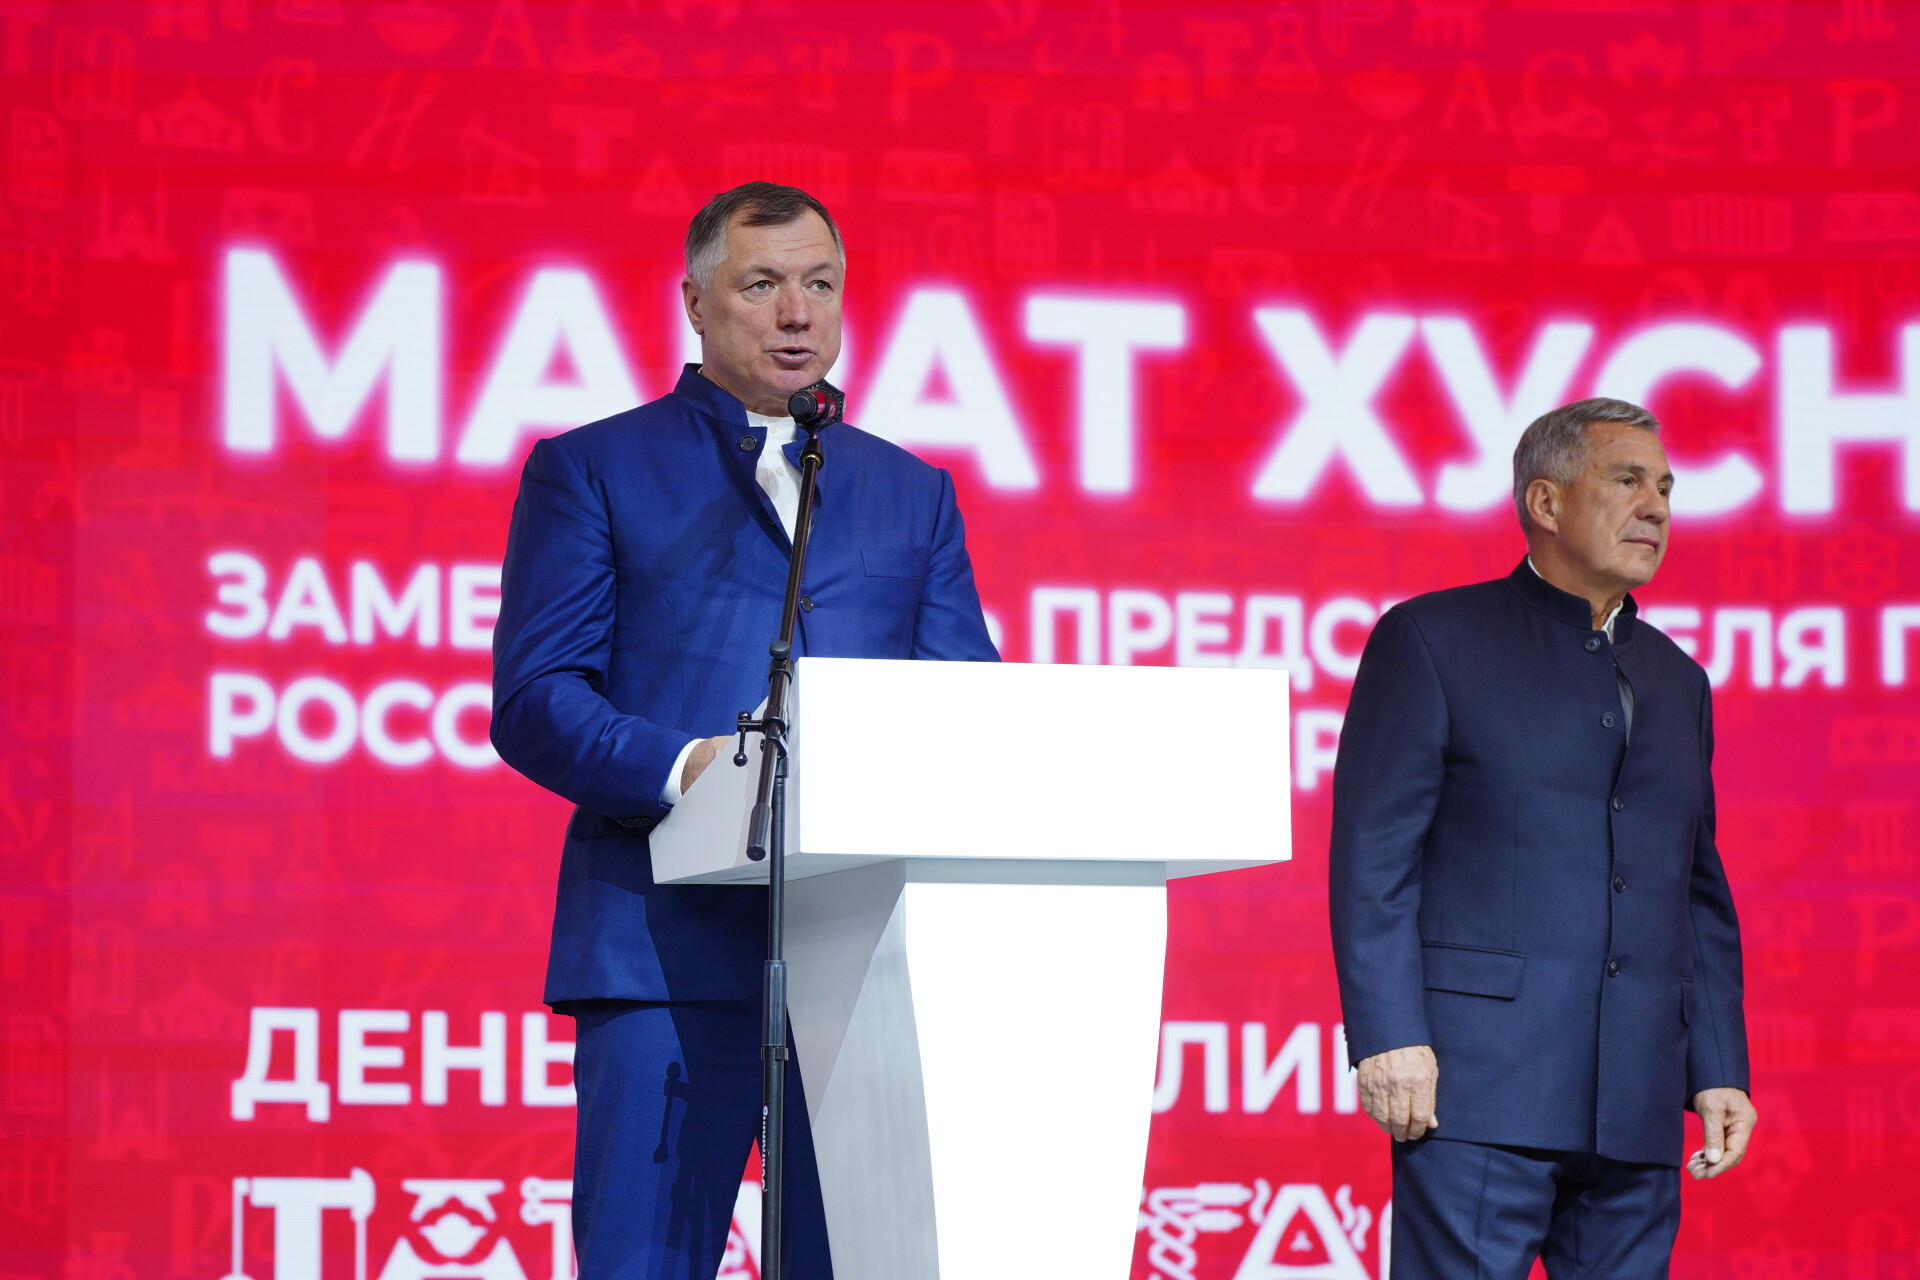 Марат Хуснуллин: Главное богатство Татарстана — это люди